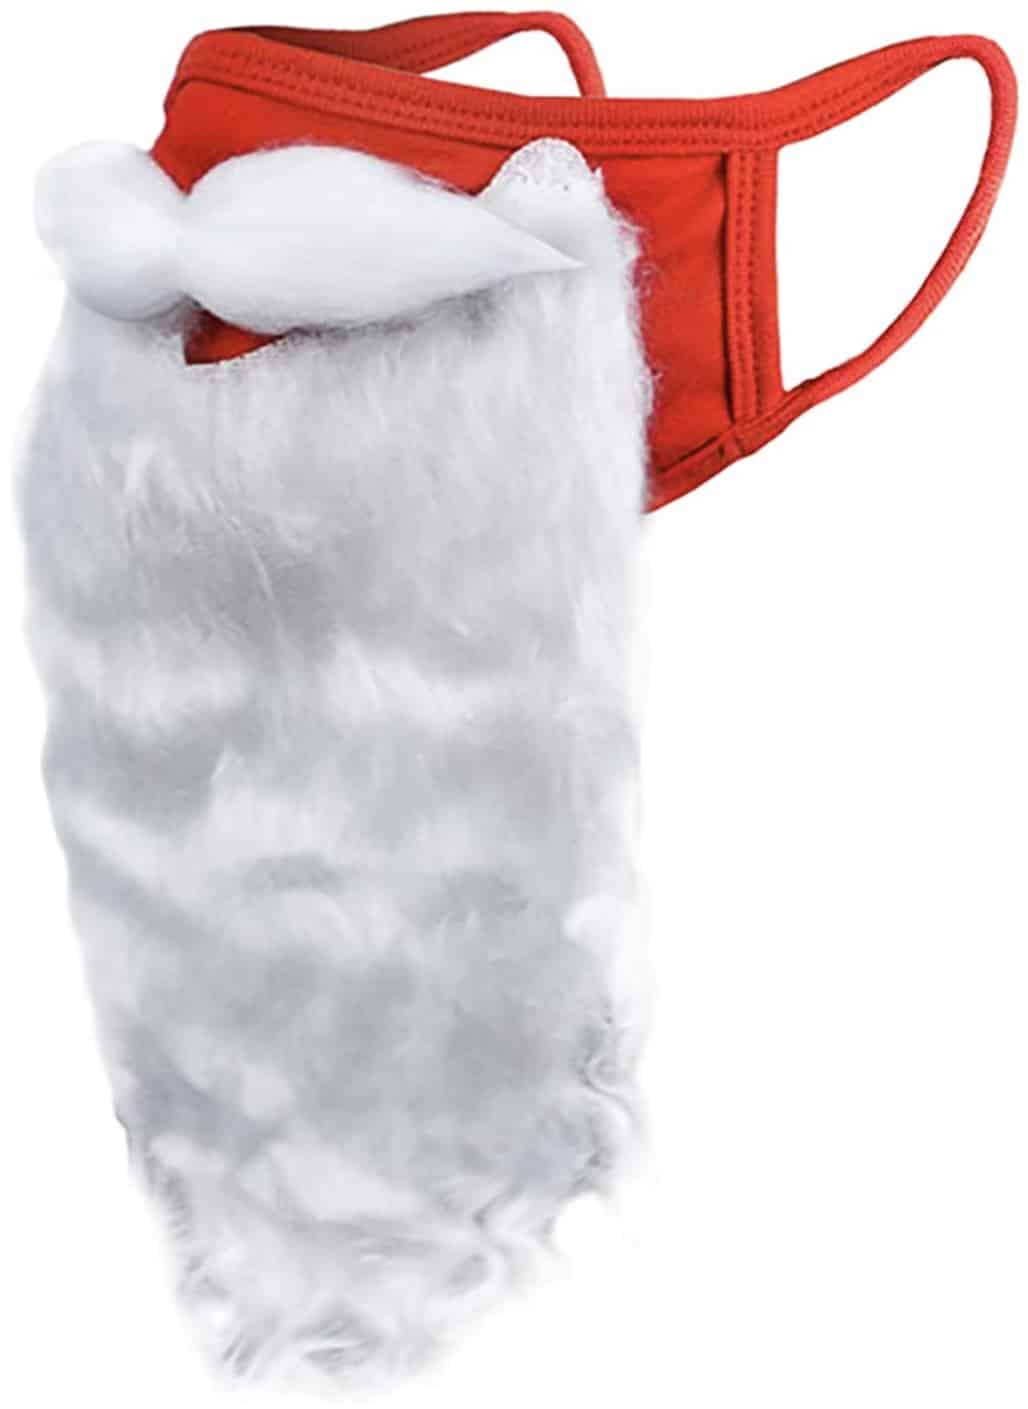 Santa Face Mask, Funny Christmas Gifts 